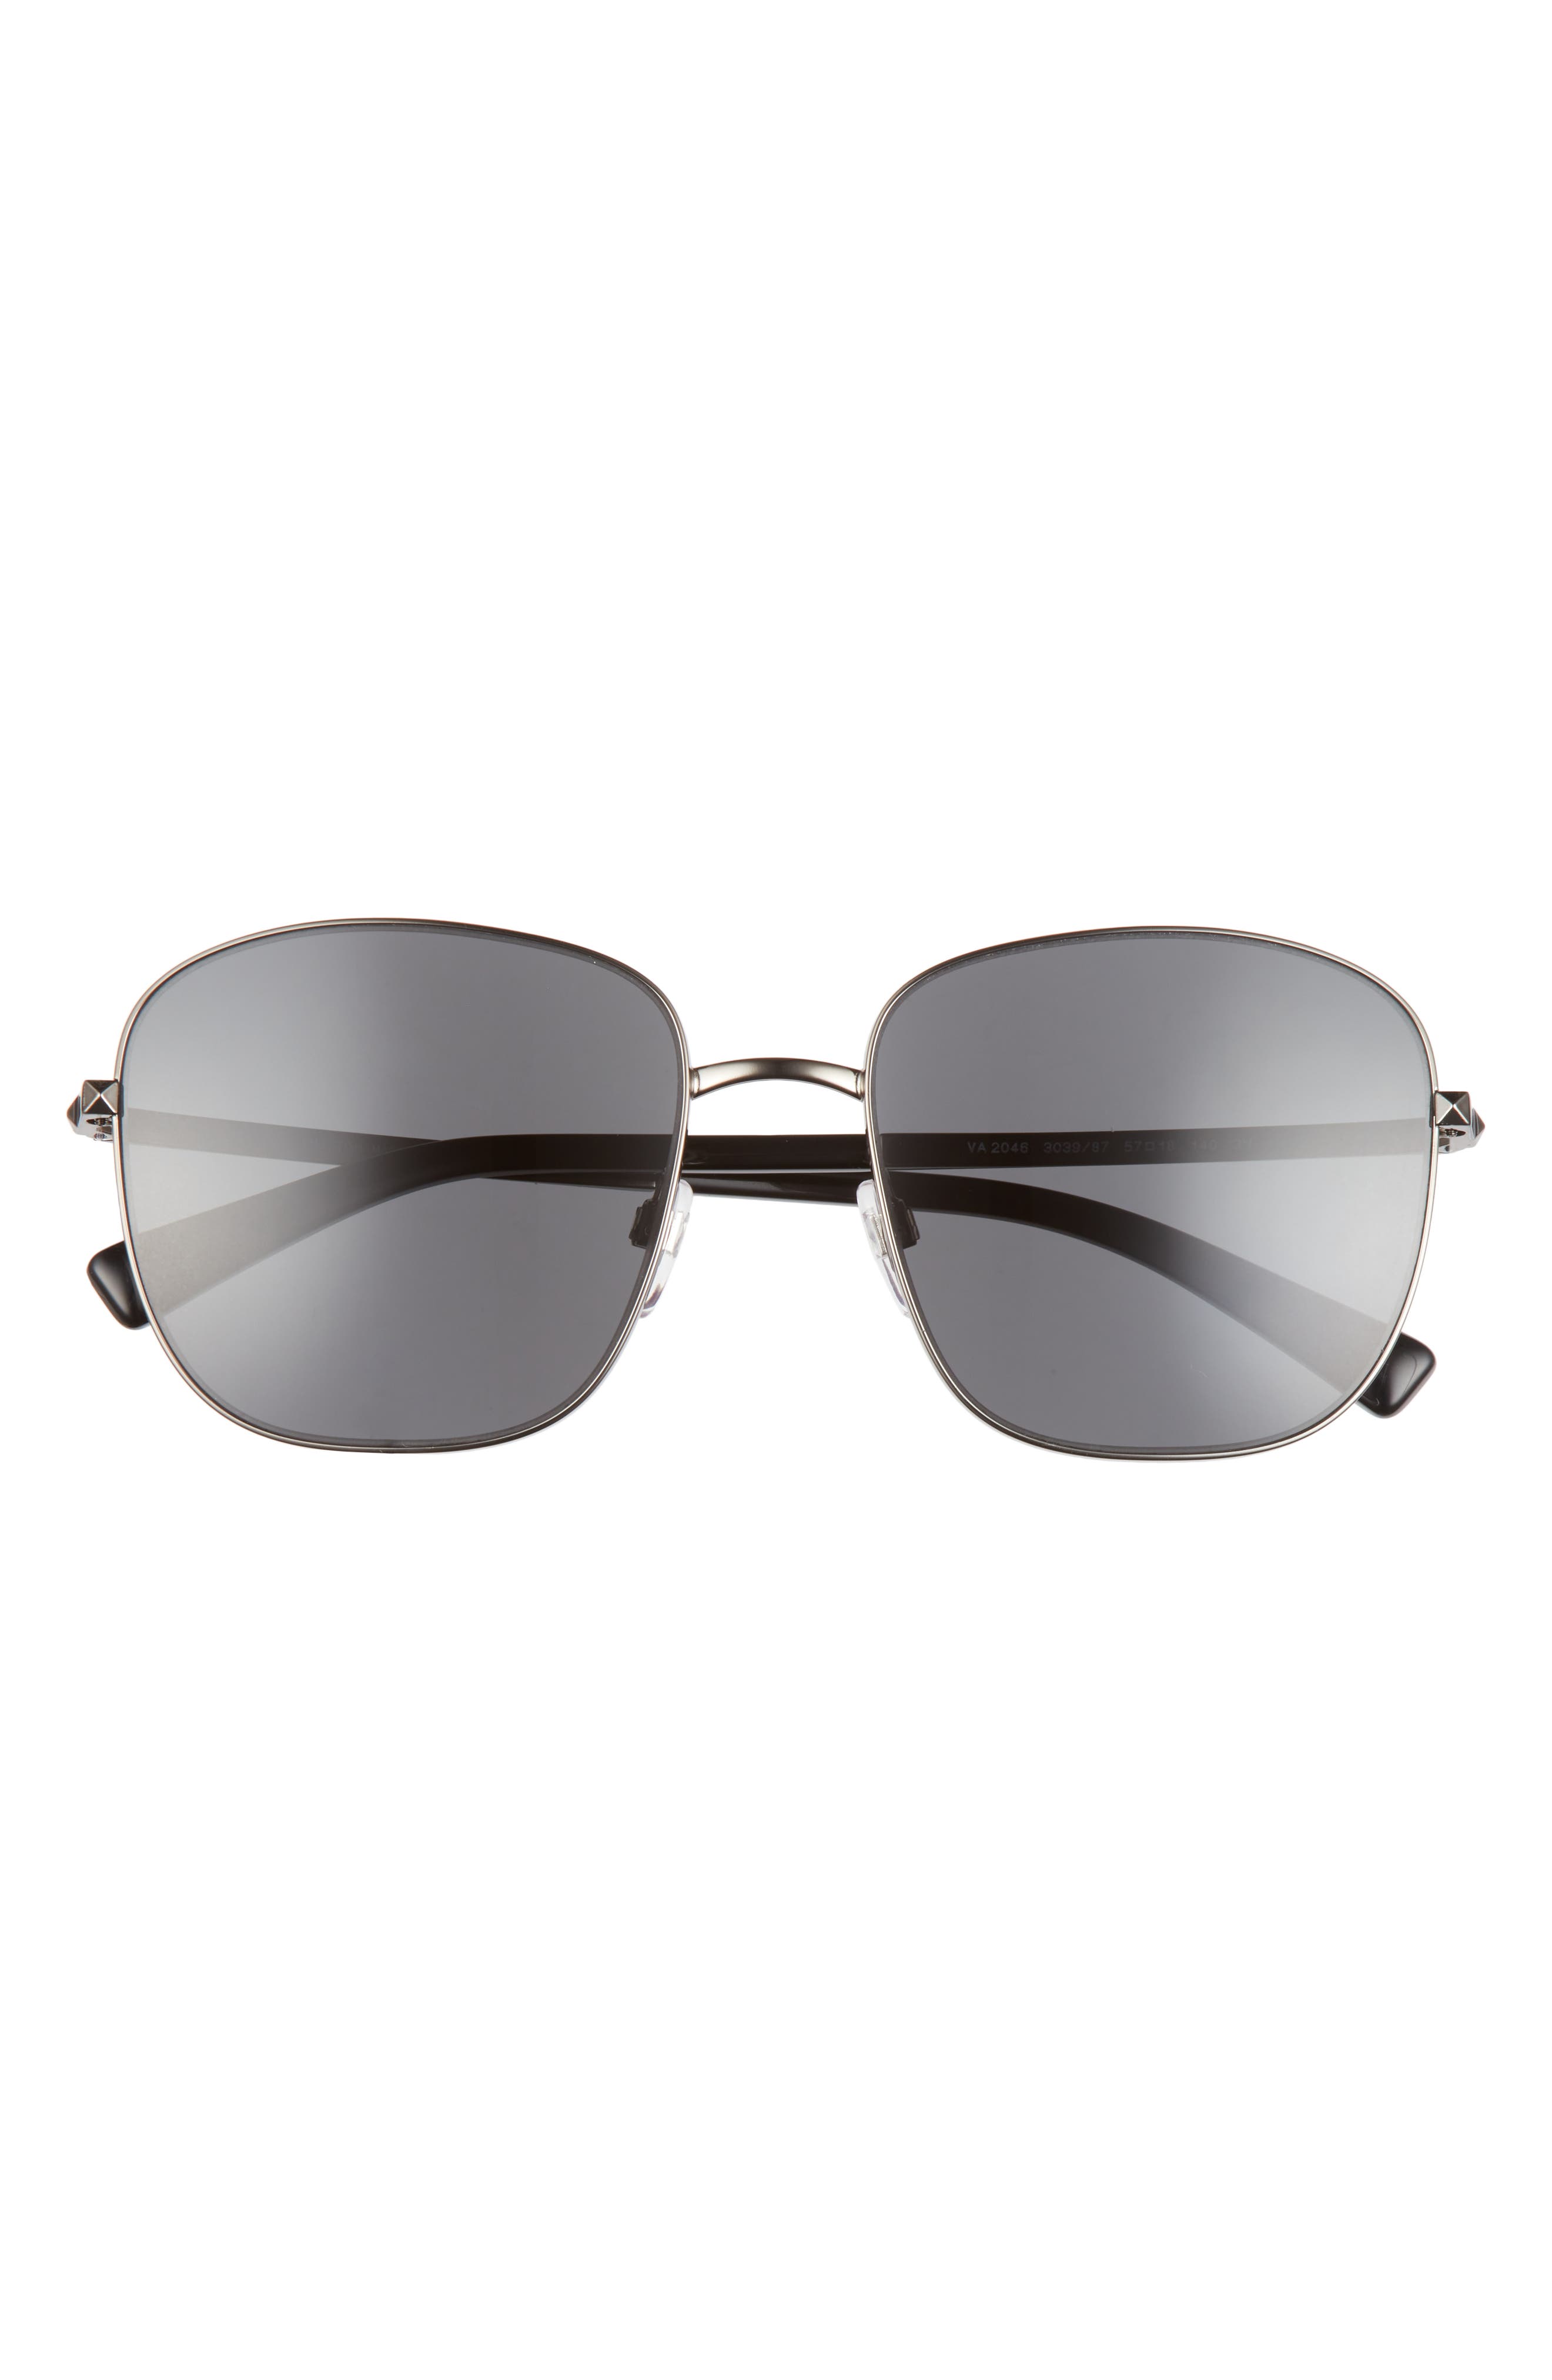 Valentino 57mm Square Sunglasses in Ruthenium/Grey at Nordstrom